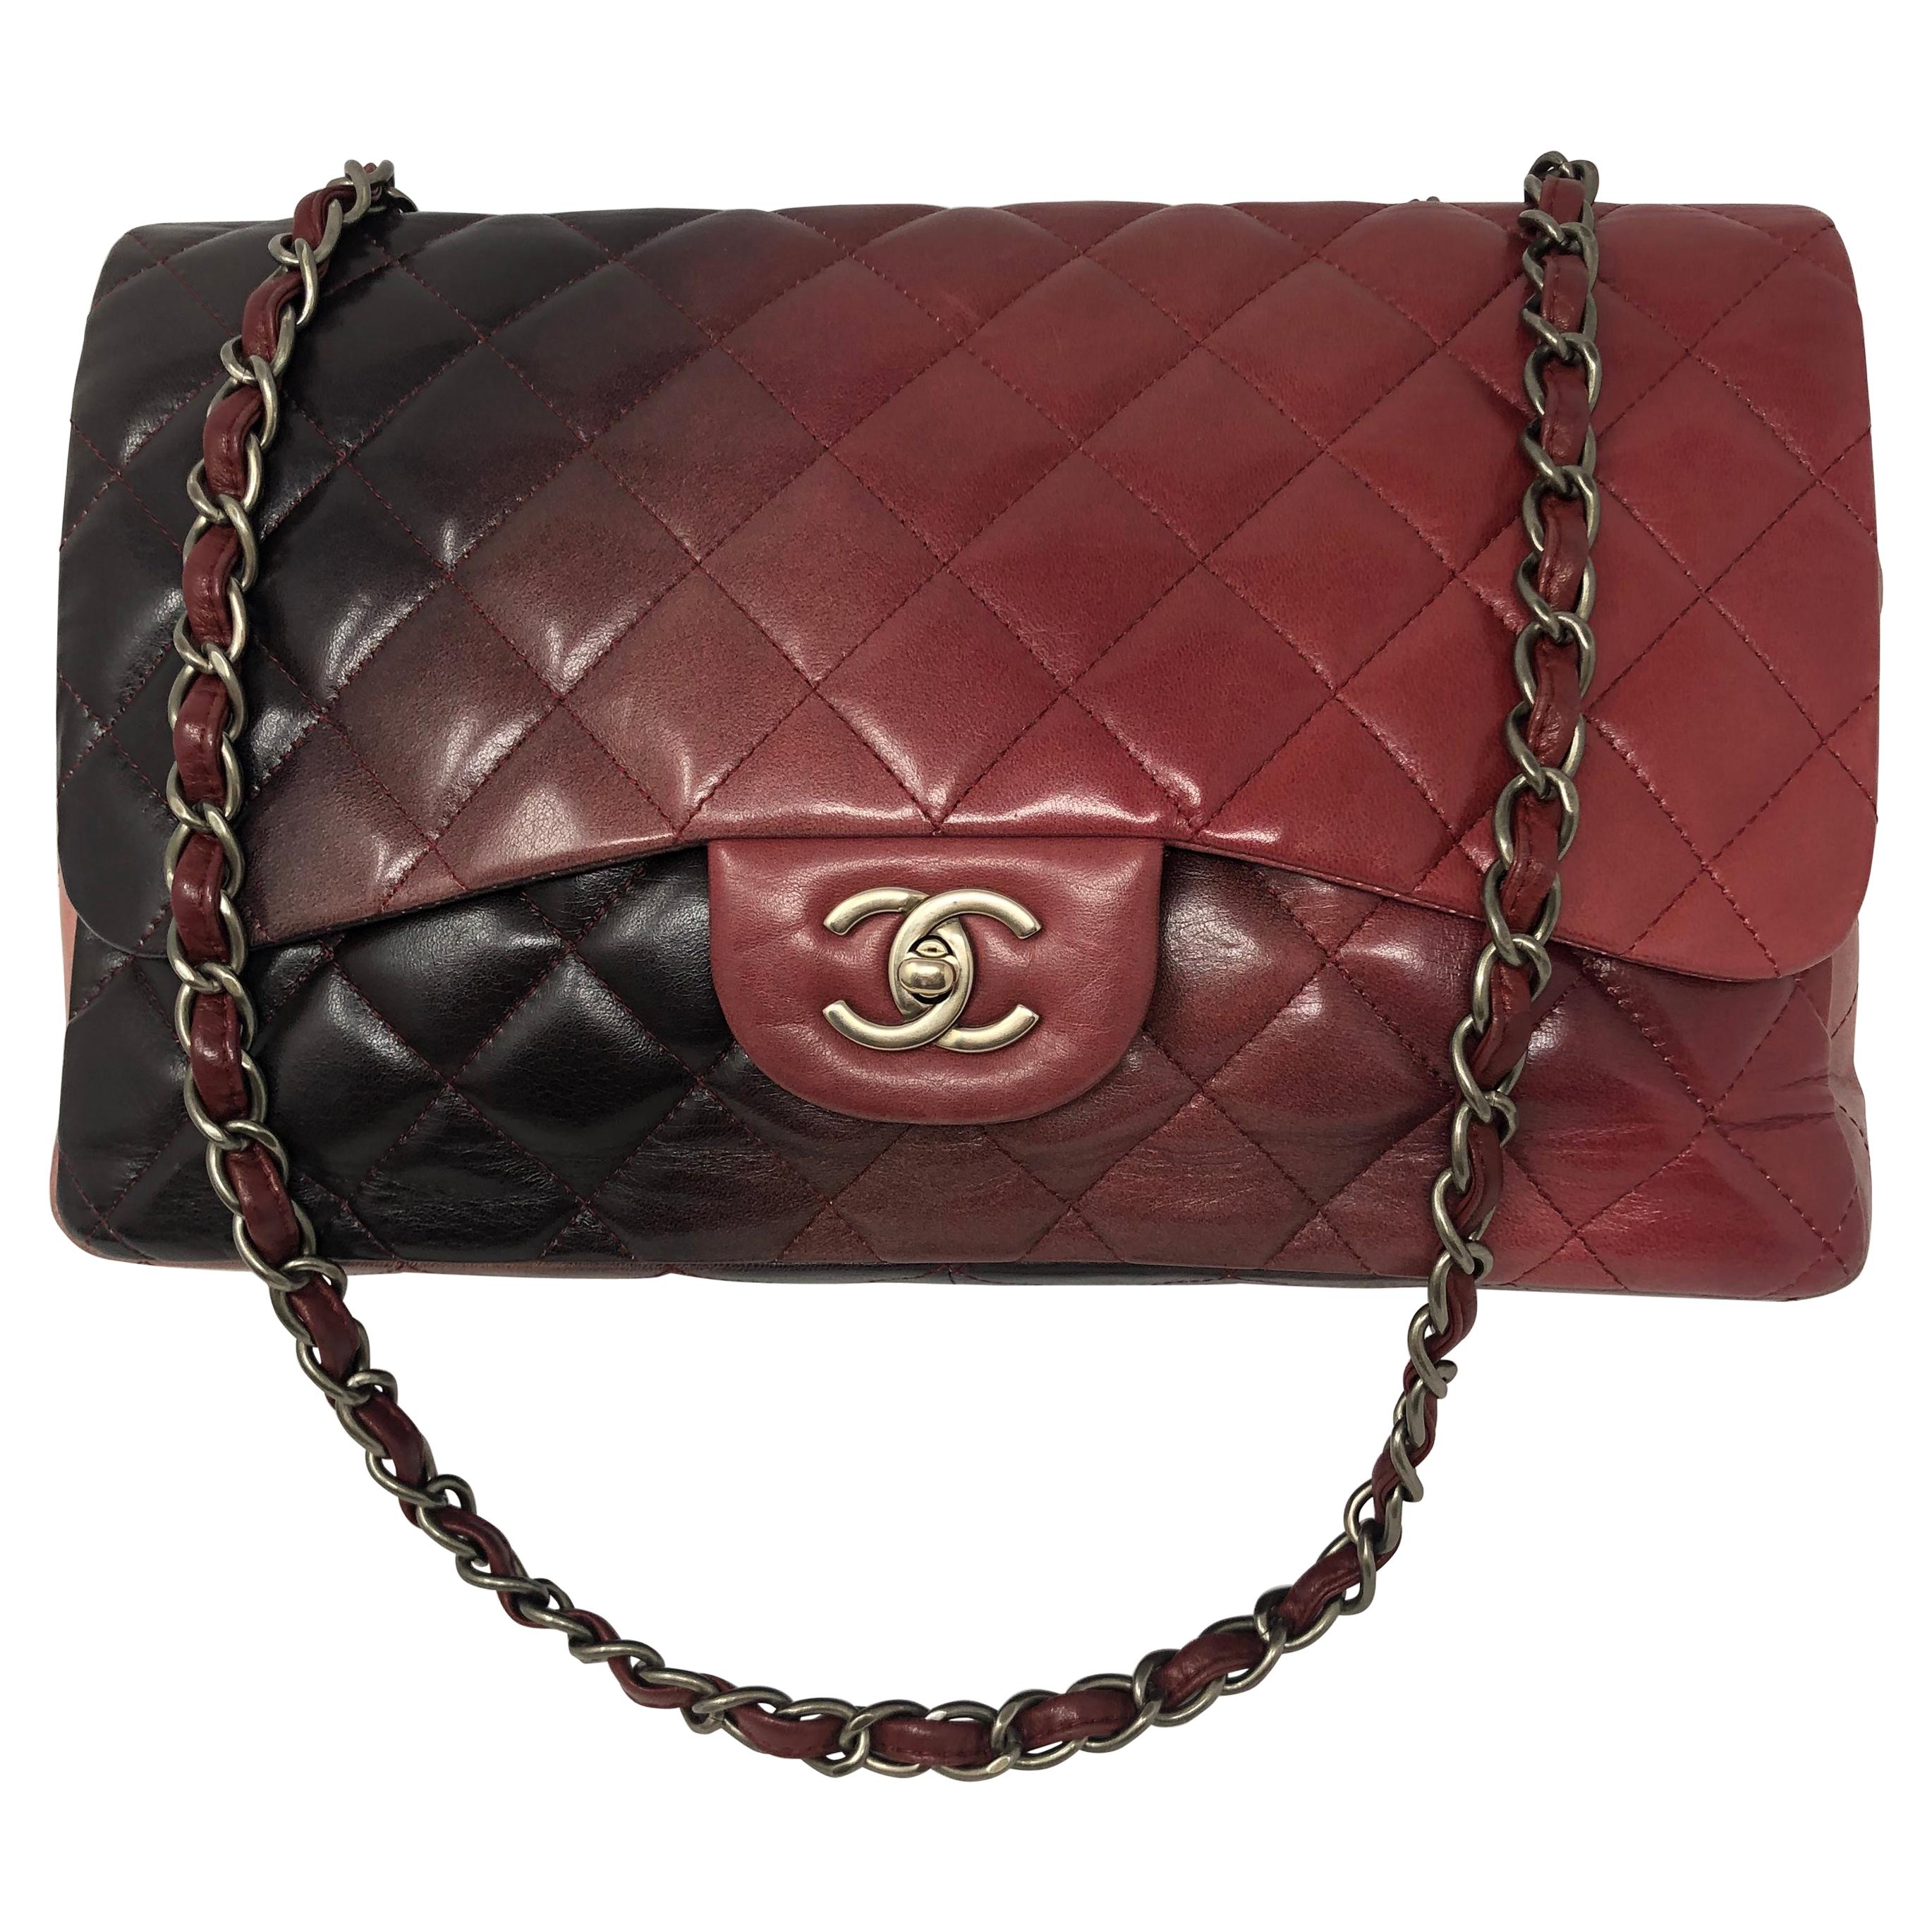 Chanel Burgundy Ombre Jumbo Classic Bag